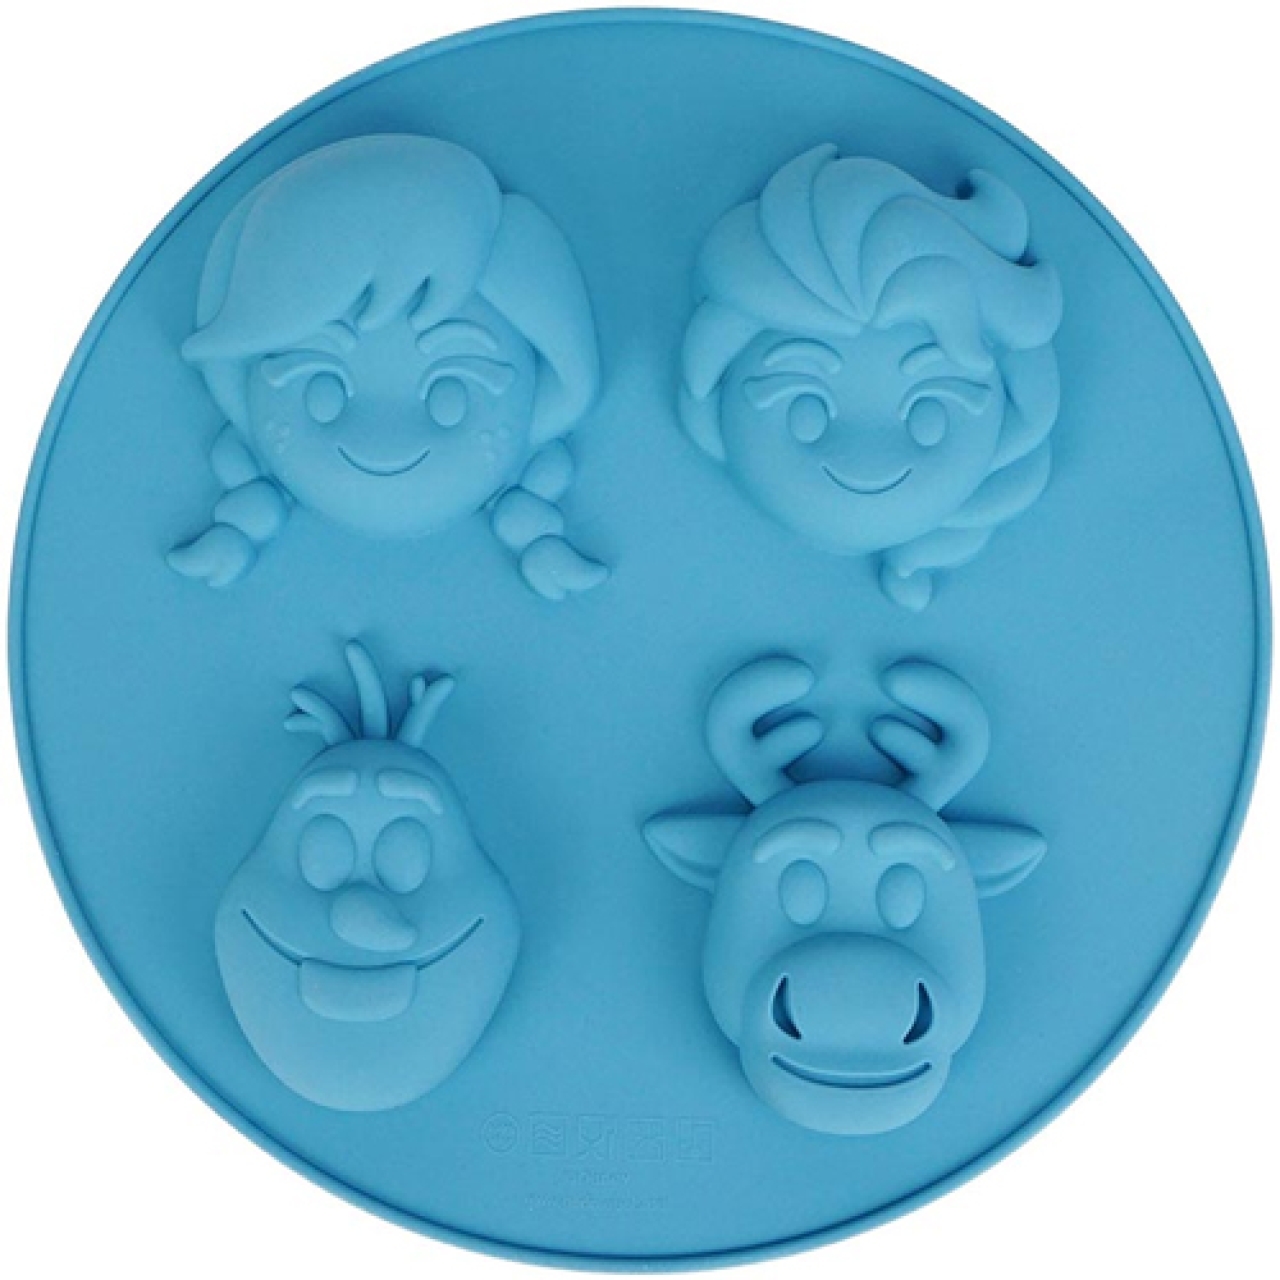 Möbel & Wohnen Disney Frozen Eiskönigin Olaf Silikon Backform Mould  Schneemann Kuchen Torte Haus & Garten €29.98